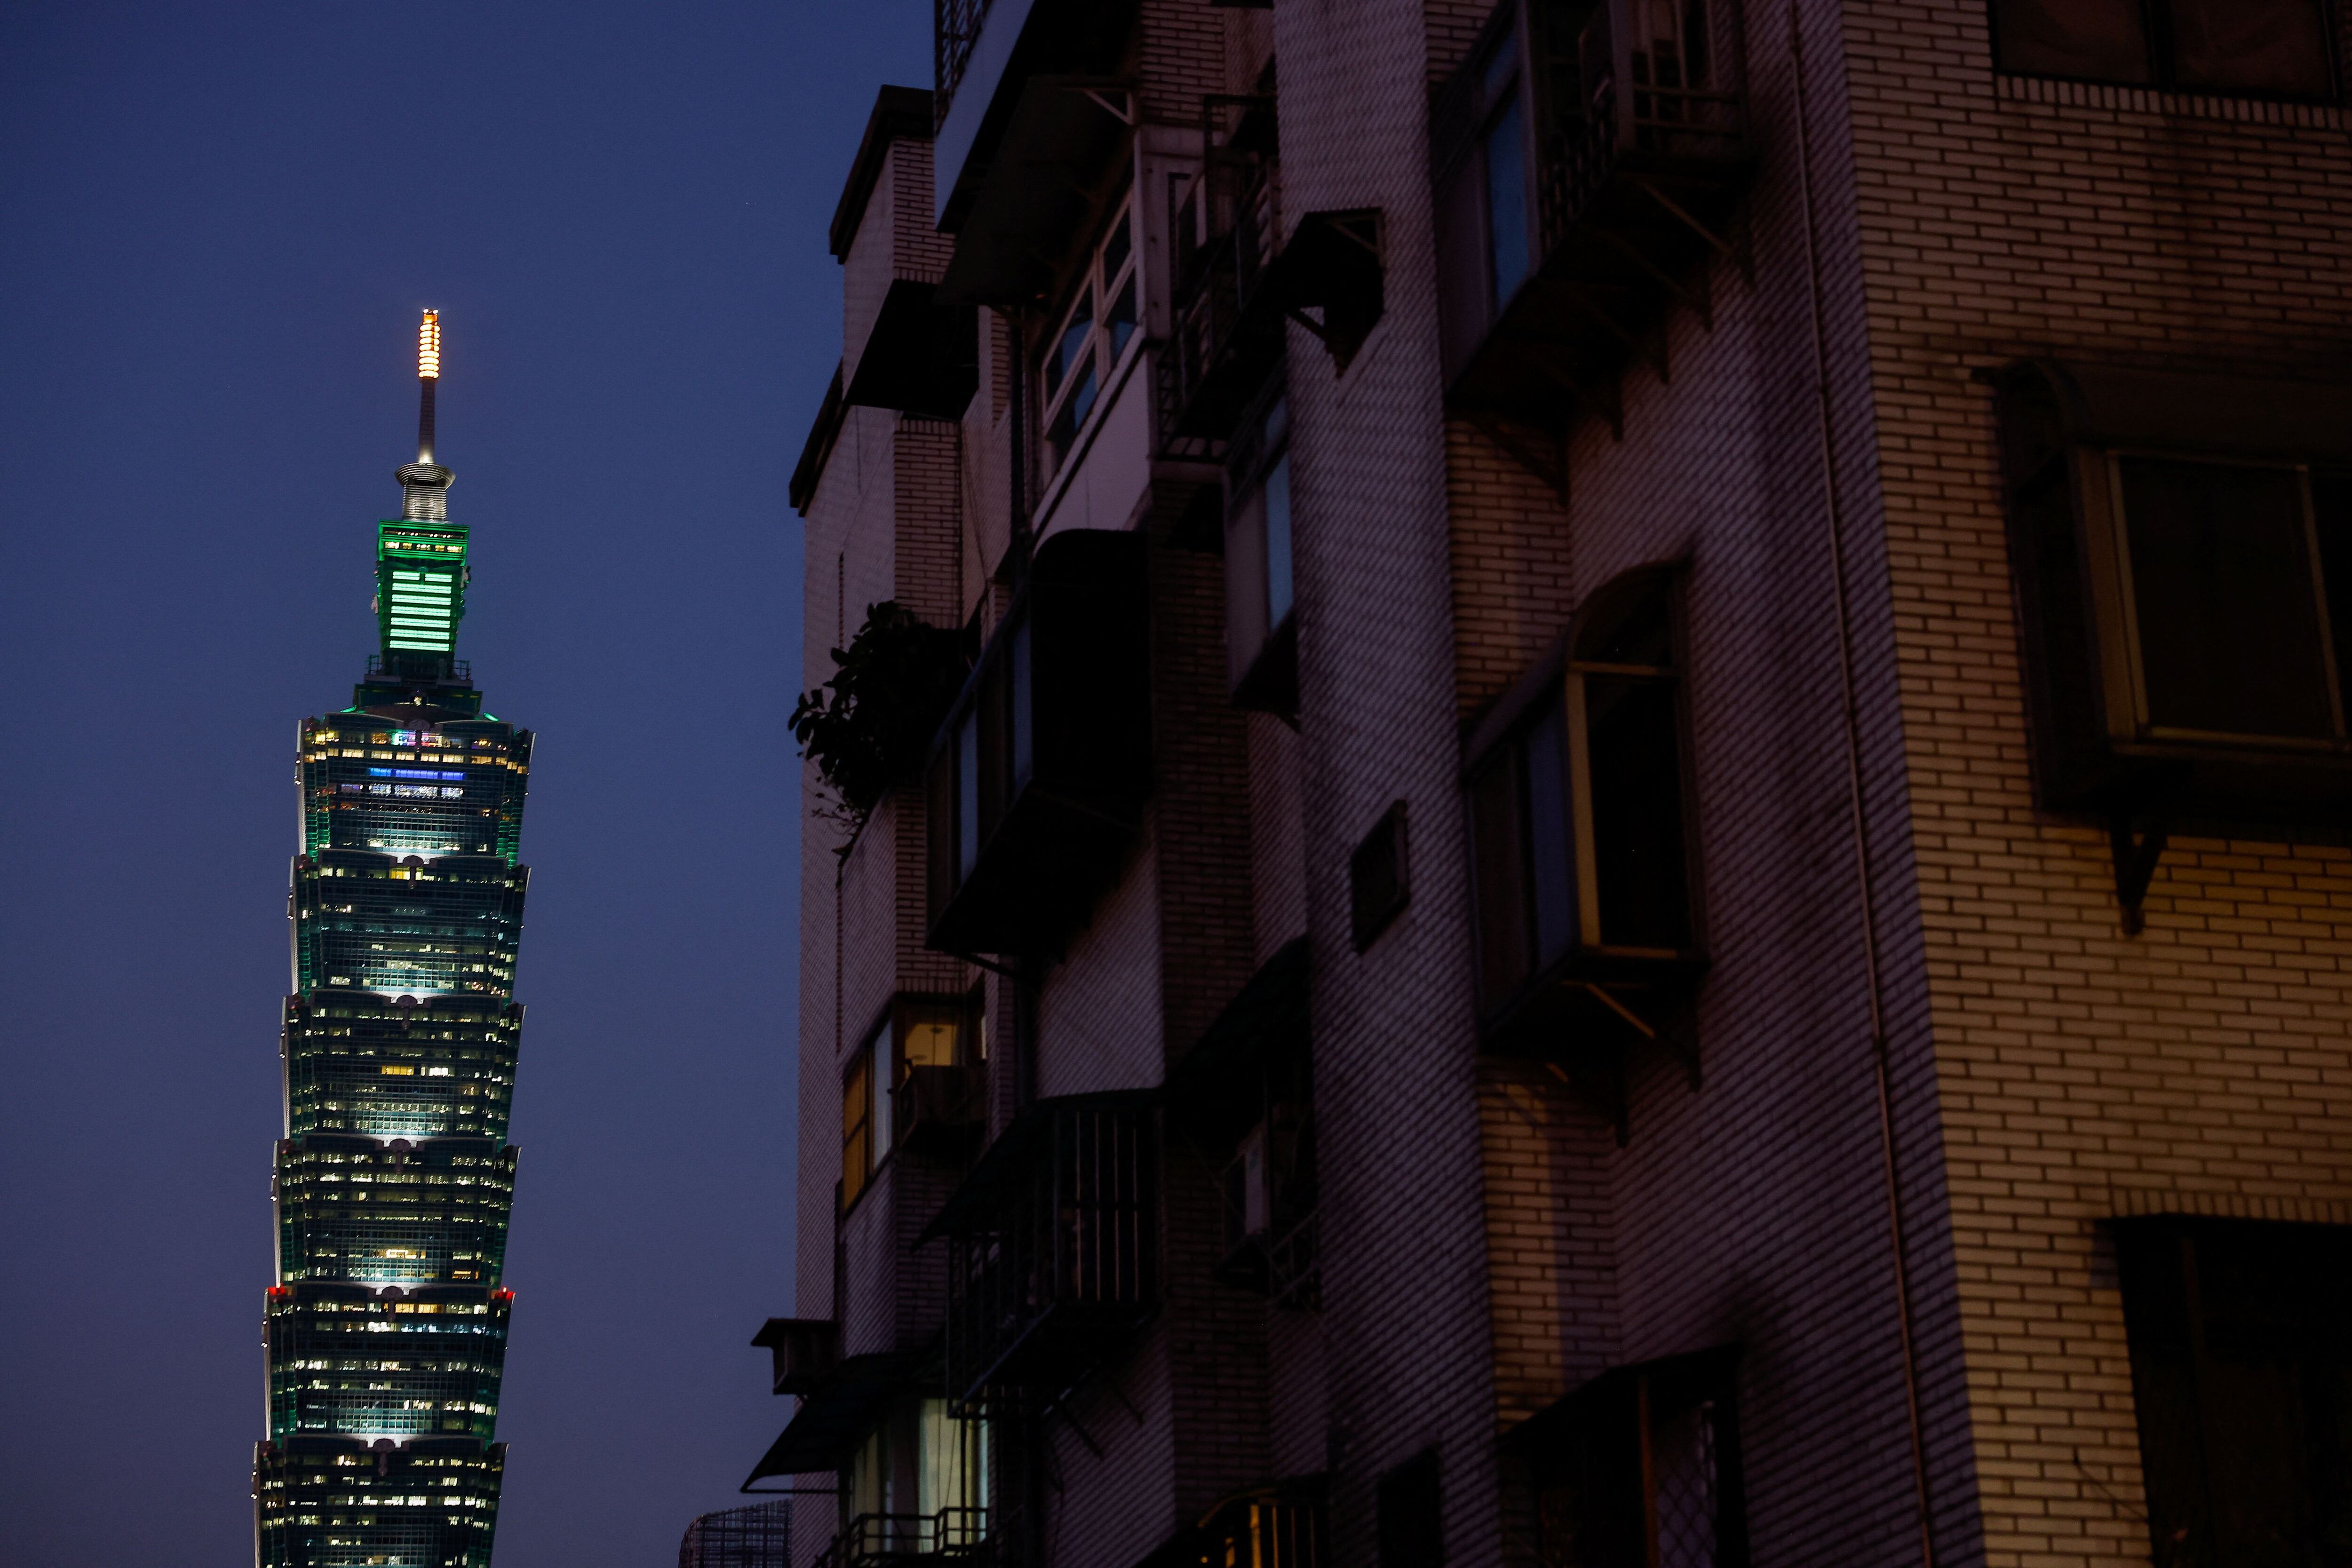 Dentro del Taipei 101, una esfera suspendida sorprende al mundo reduciendo significativamente el balance del rascacielos, ofreciendo una lección de resiliencia arquitectónica (REUTERS/Ann Wang)